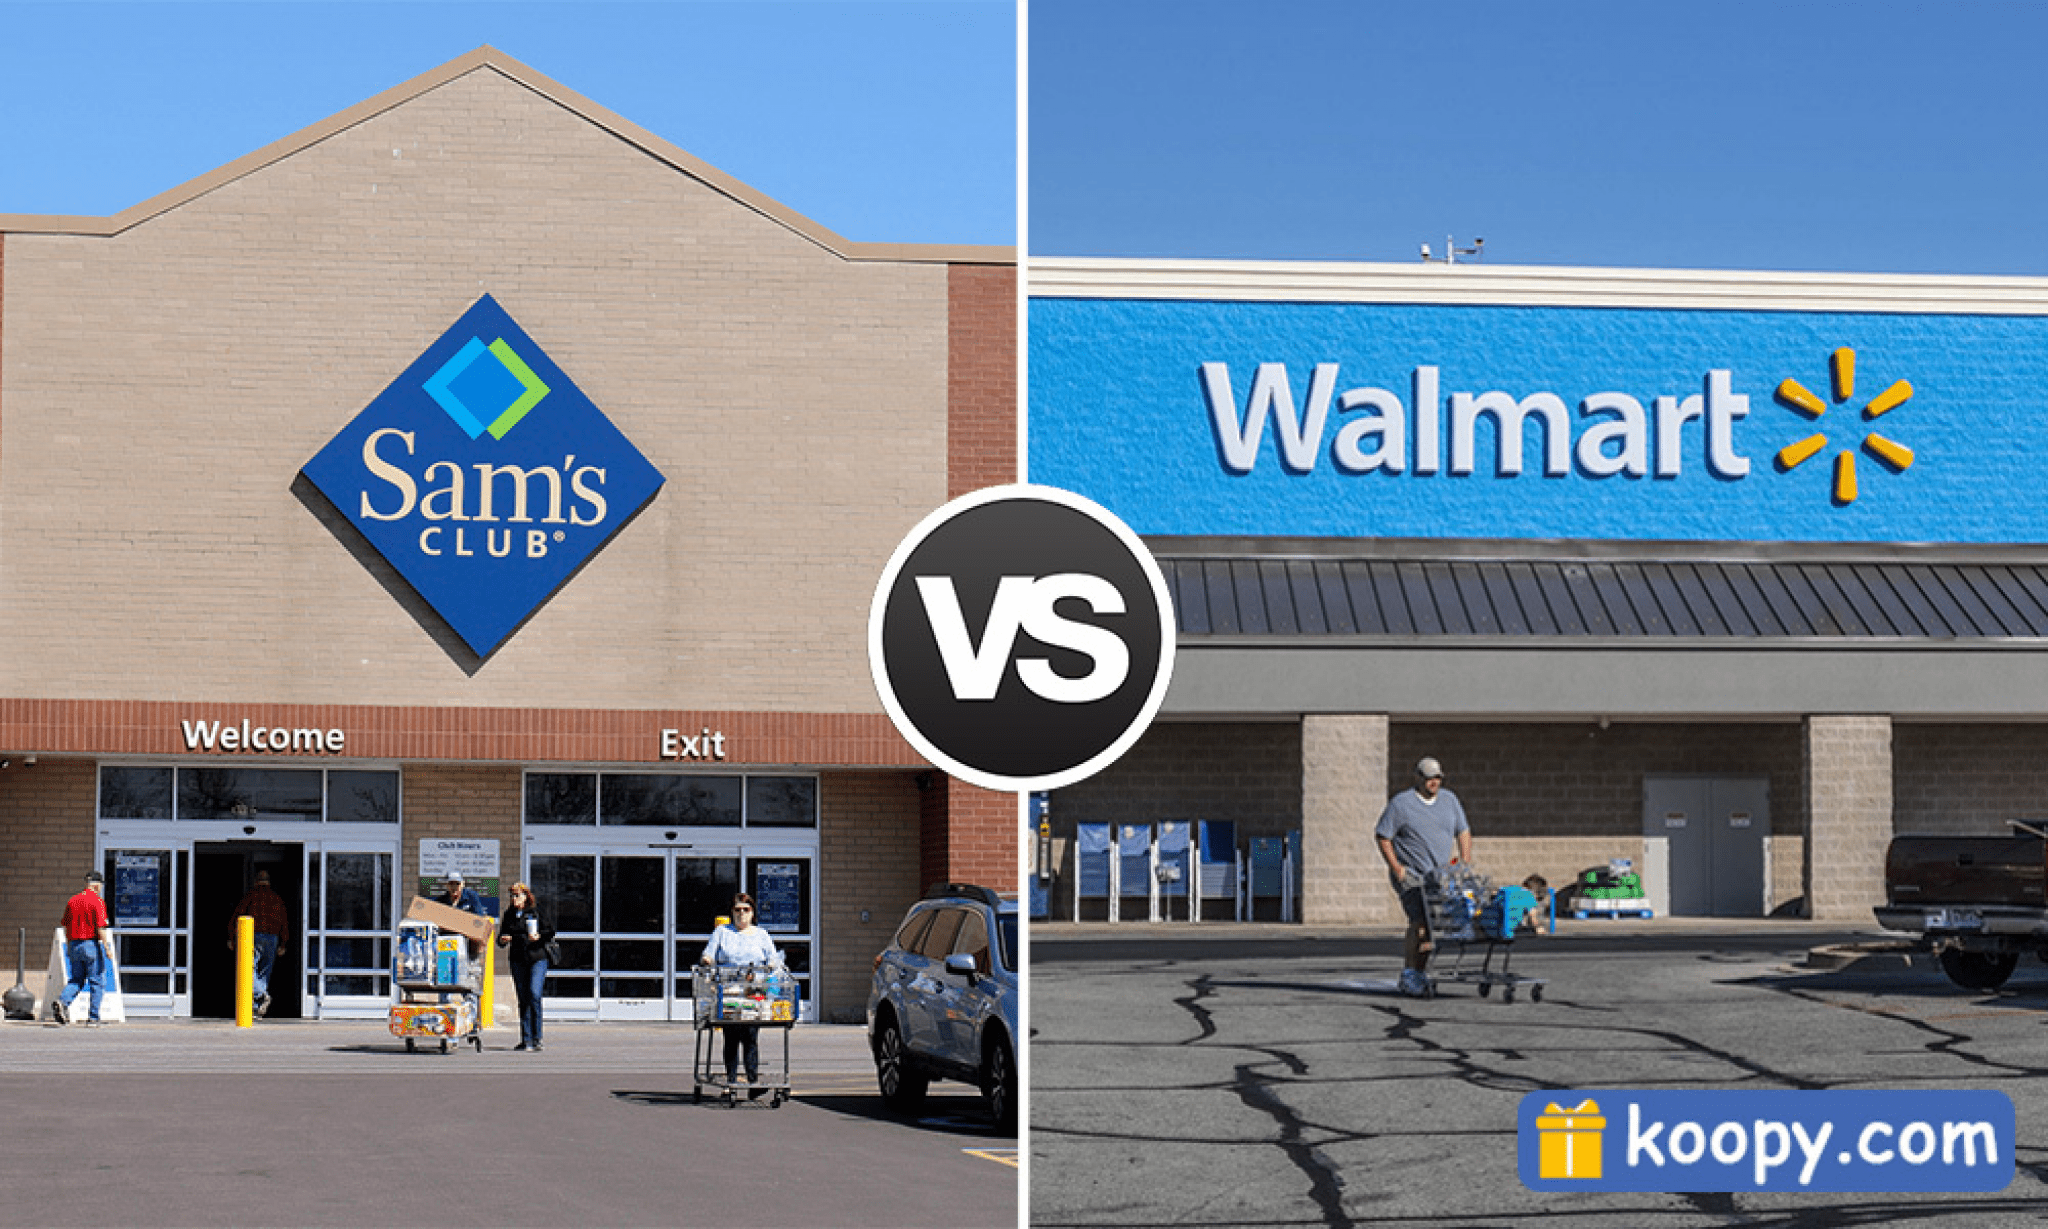 Sam's Club vs. Walmart Price Comparison Which Is Cheaper?